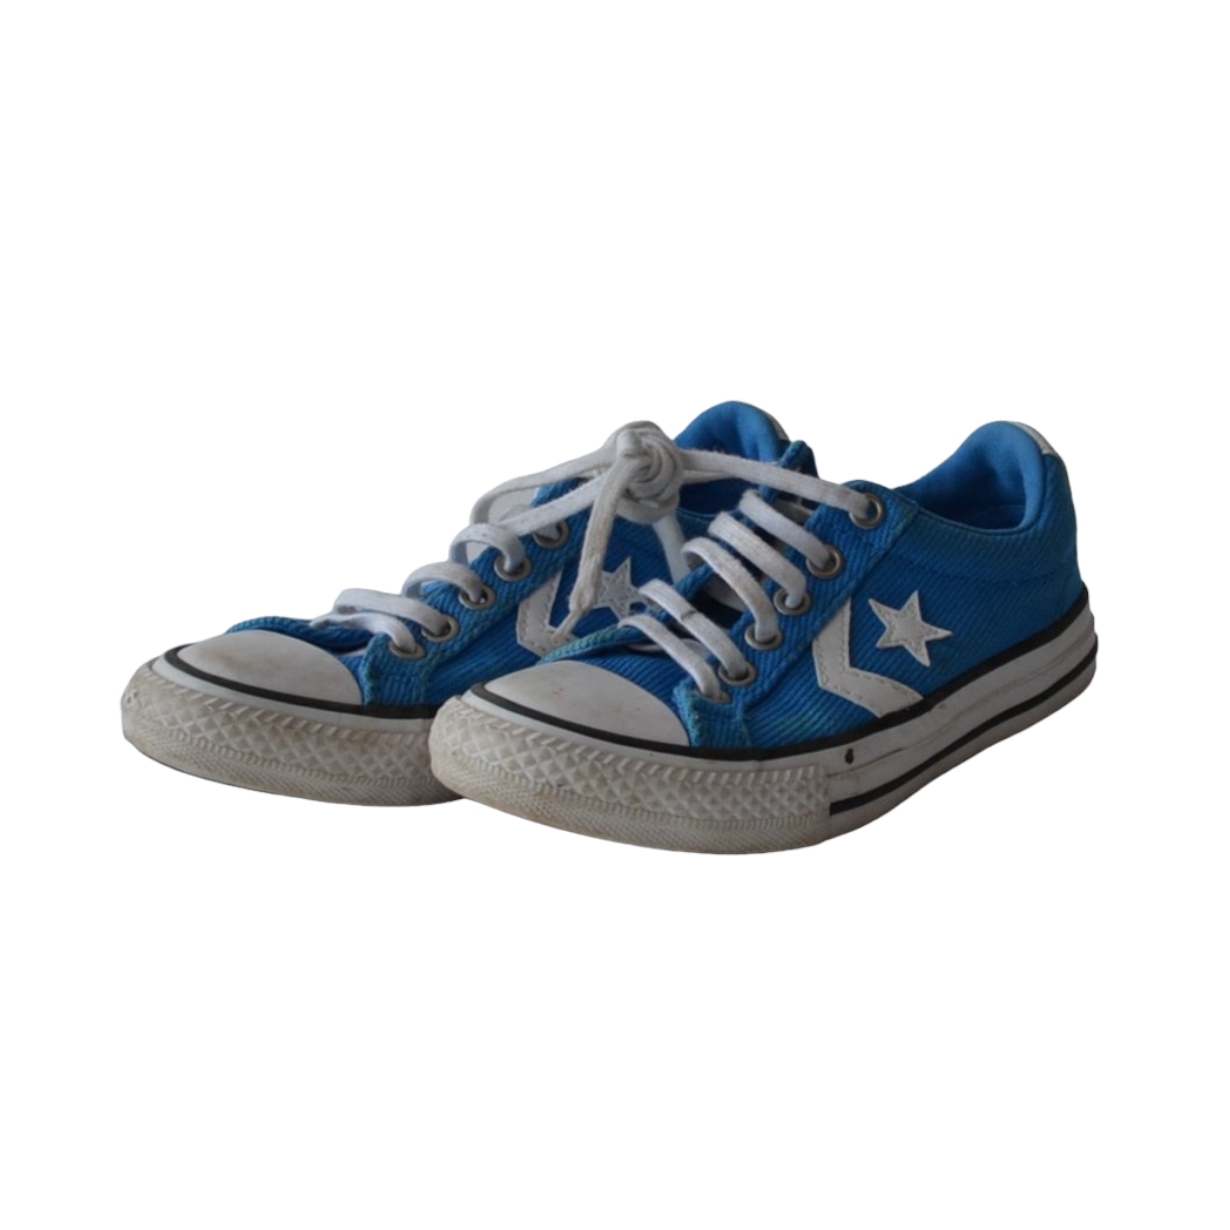 Converse Blue Canvas Trainers Shoe Size 12 (jr)